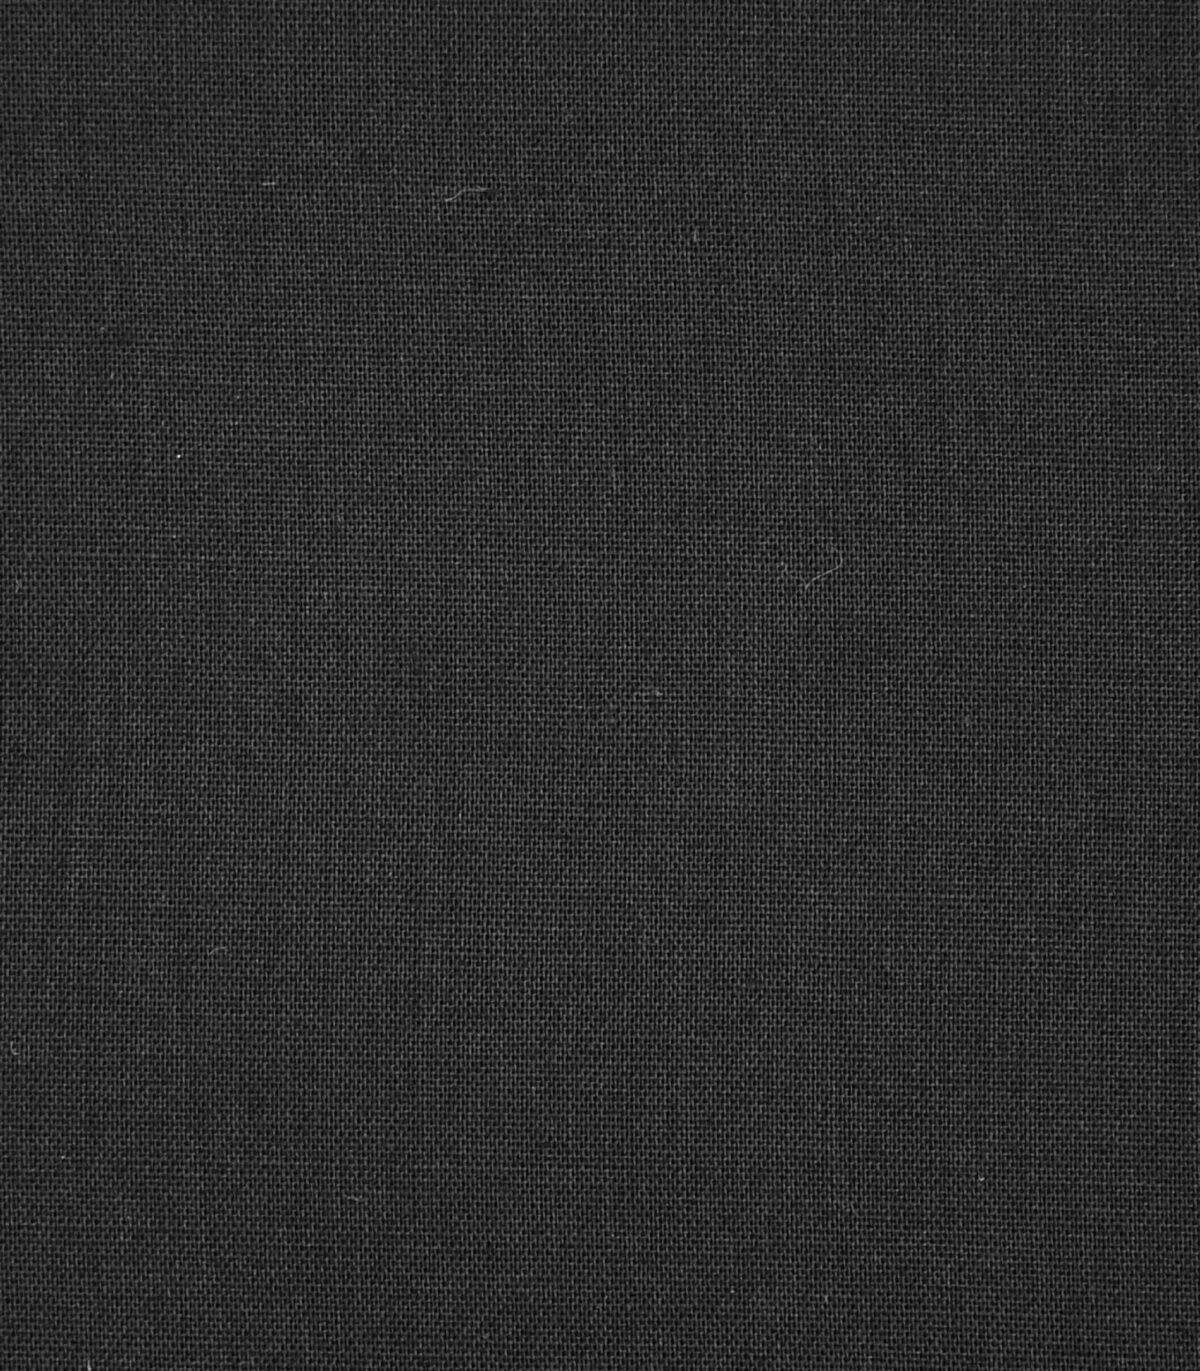 Black Color Solid Plain Cotton Fabric